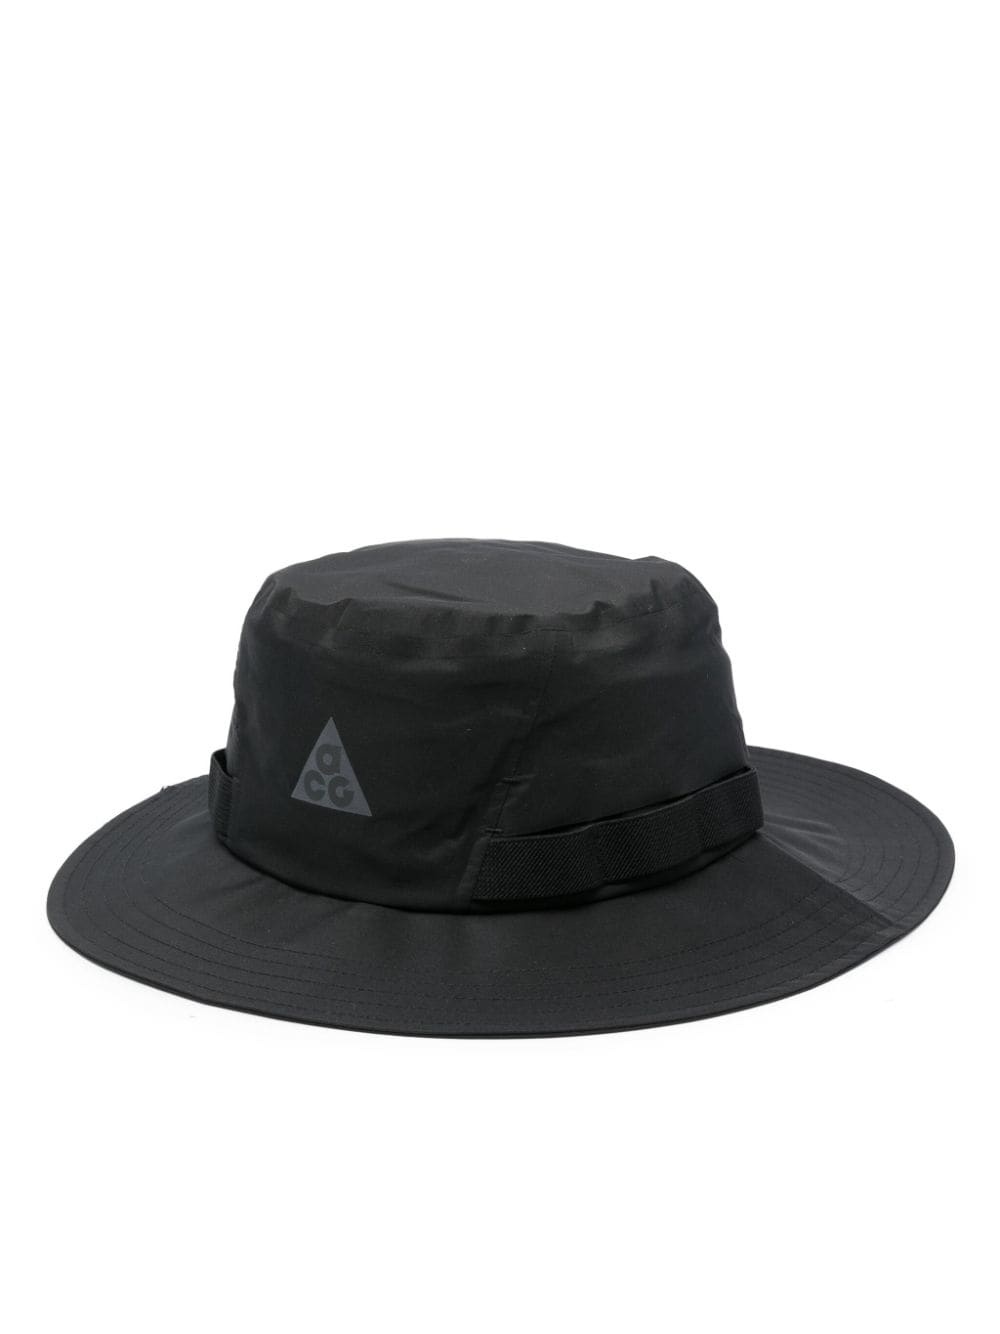 Nike Apex bucket hat